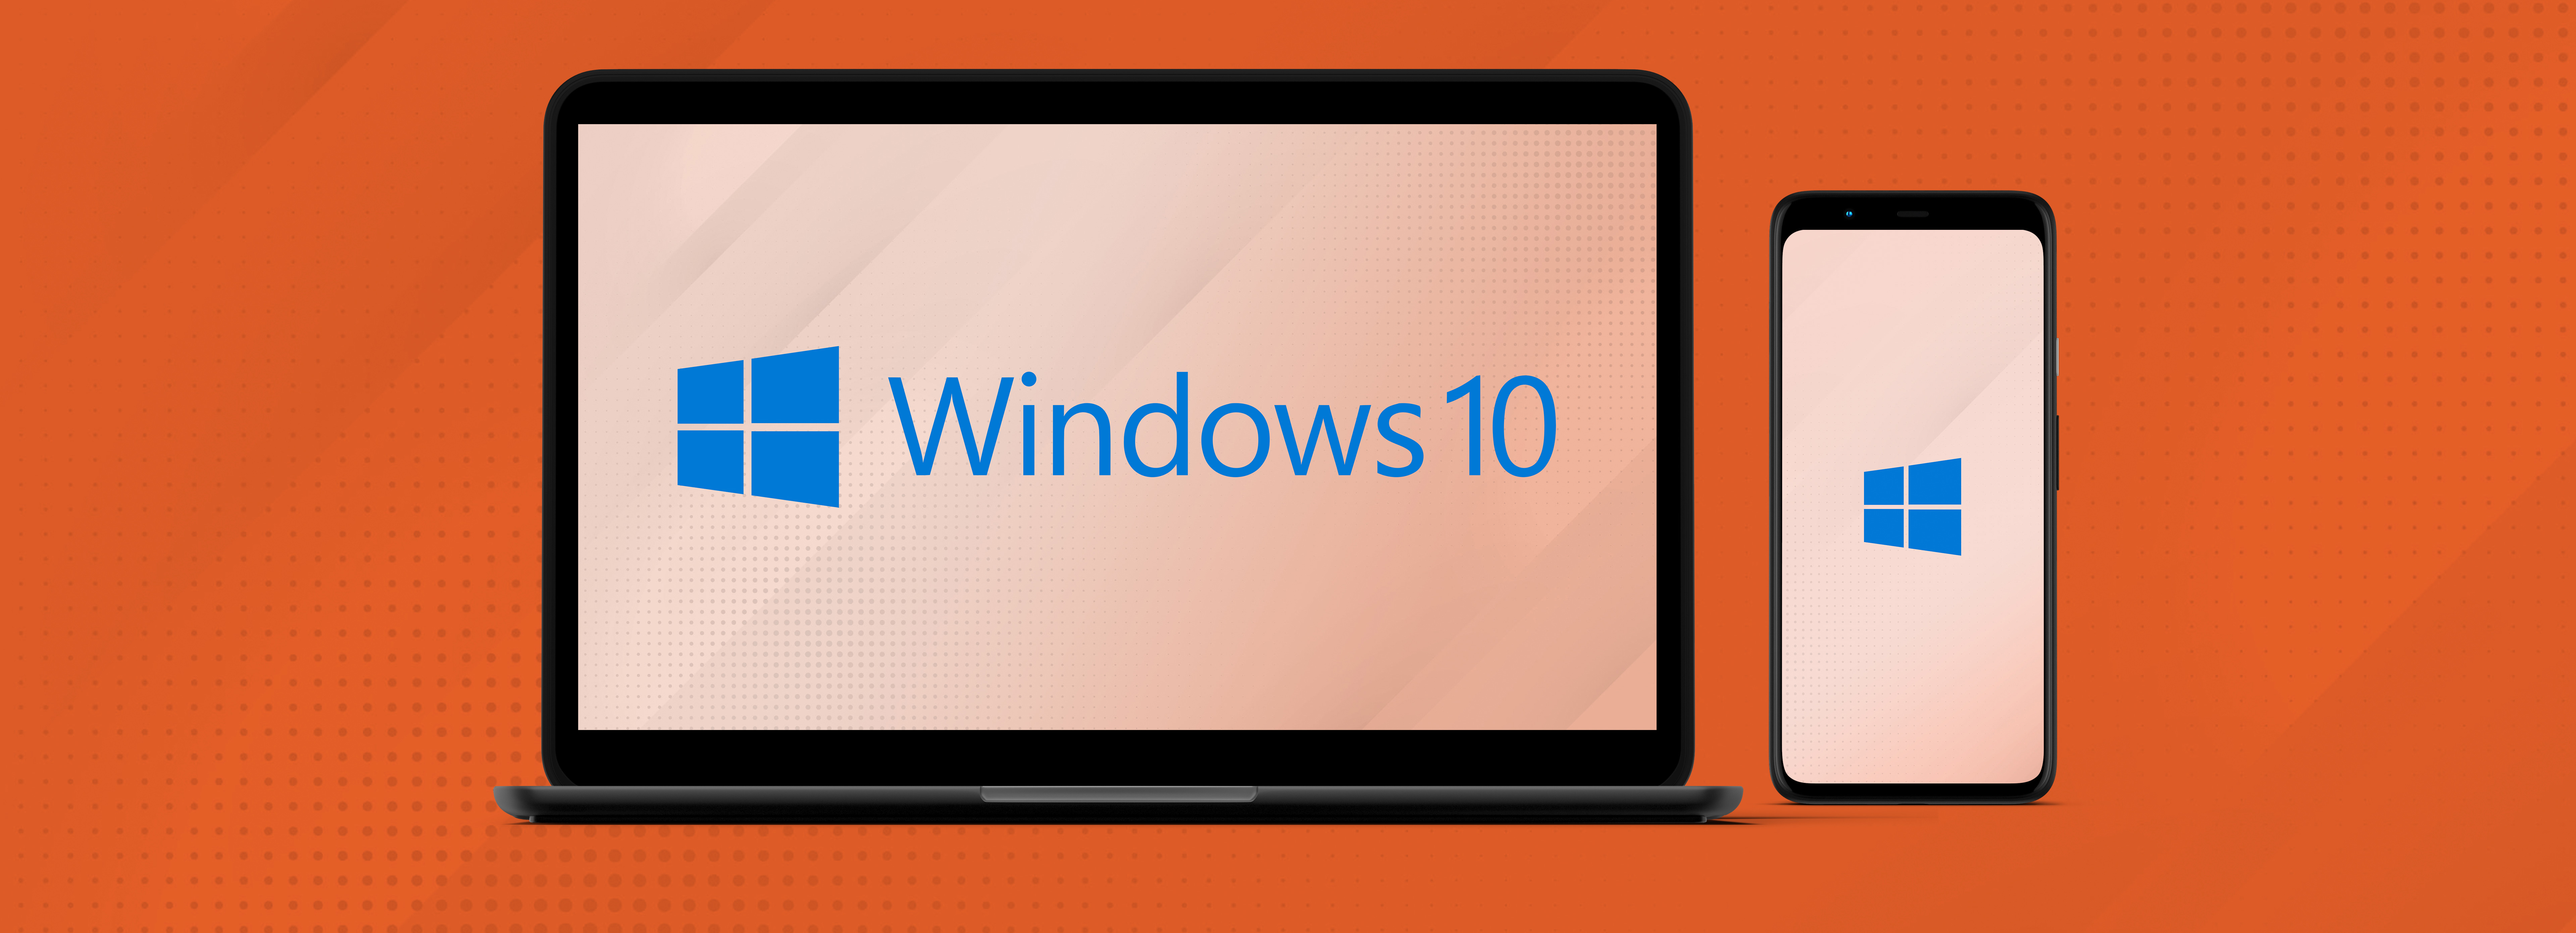 Offerte Windows 10: i migliori prezzi online 3